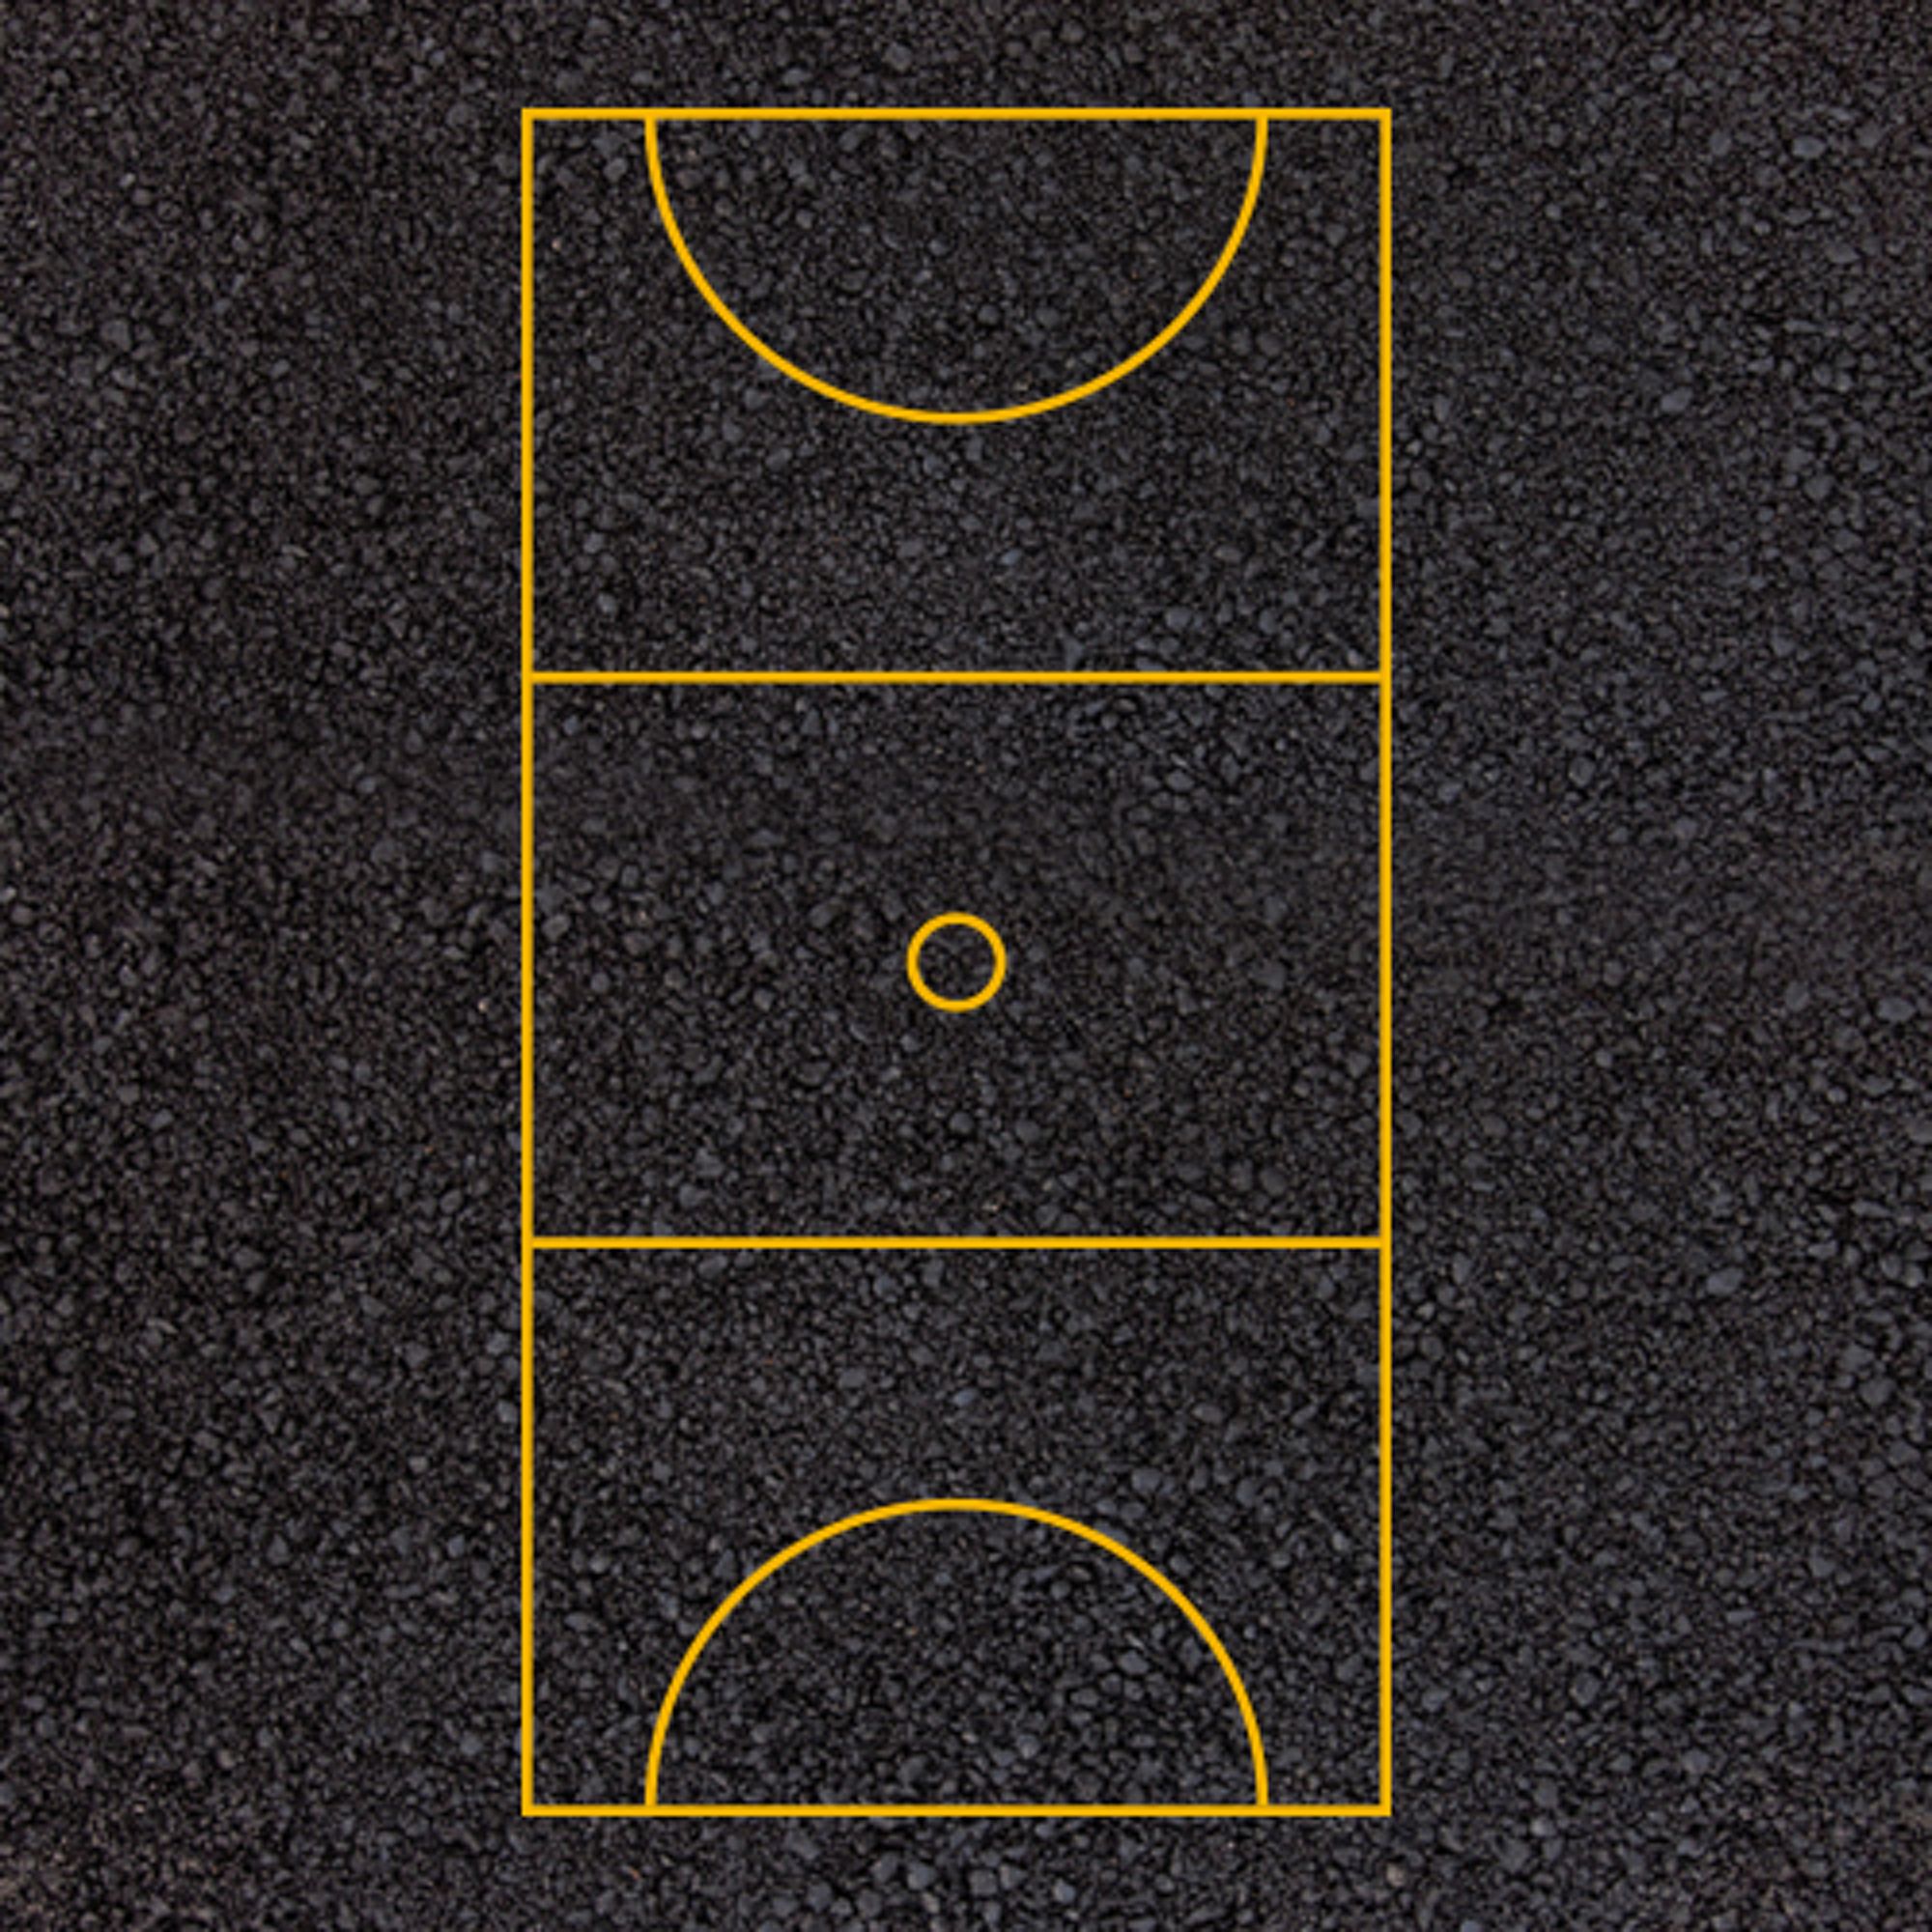 Netball Court Yellow Markings